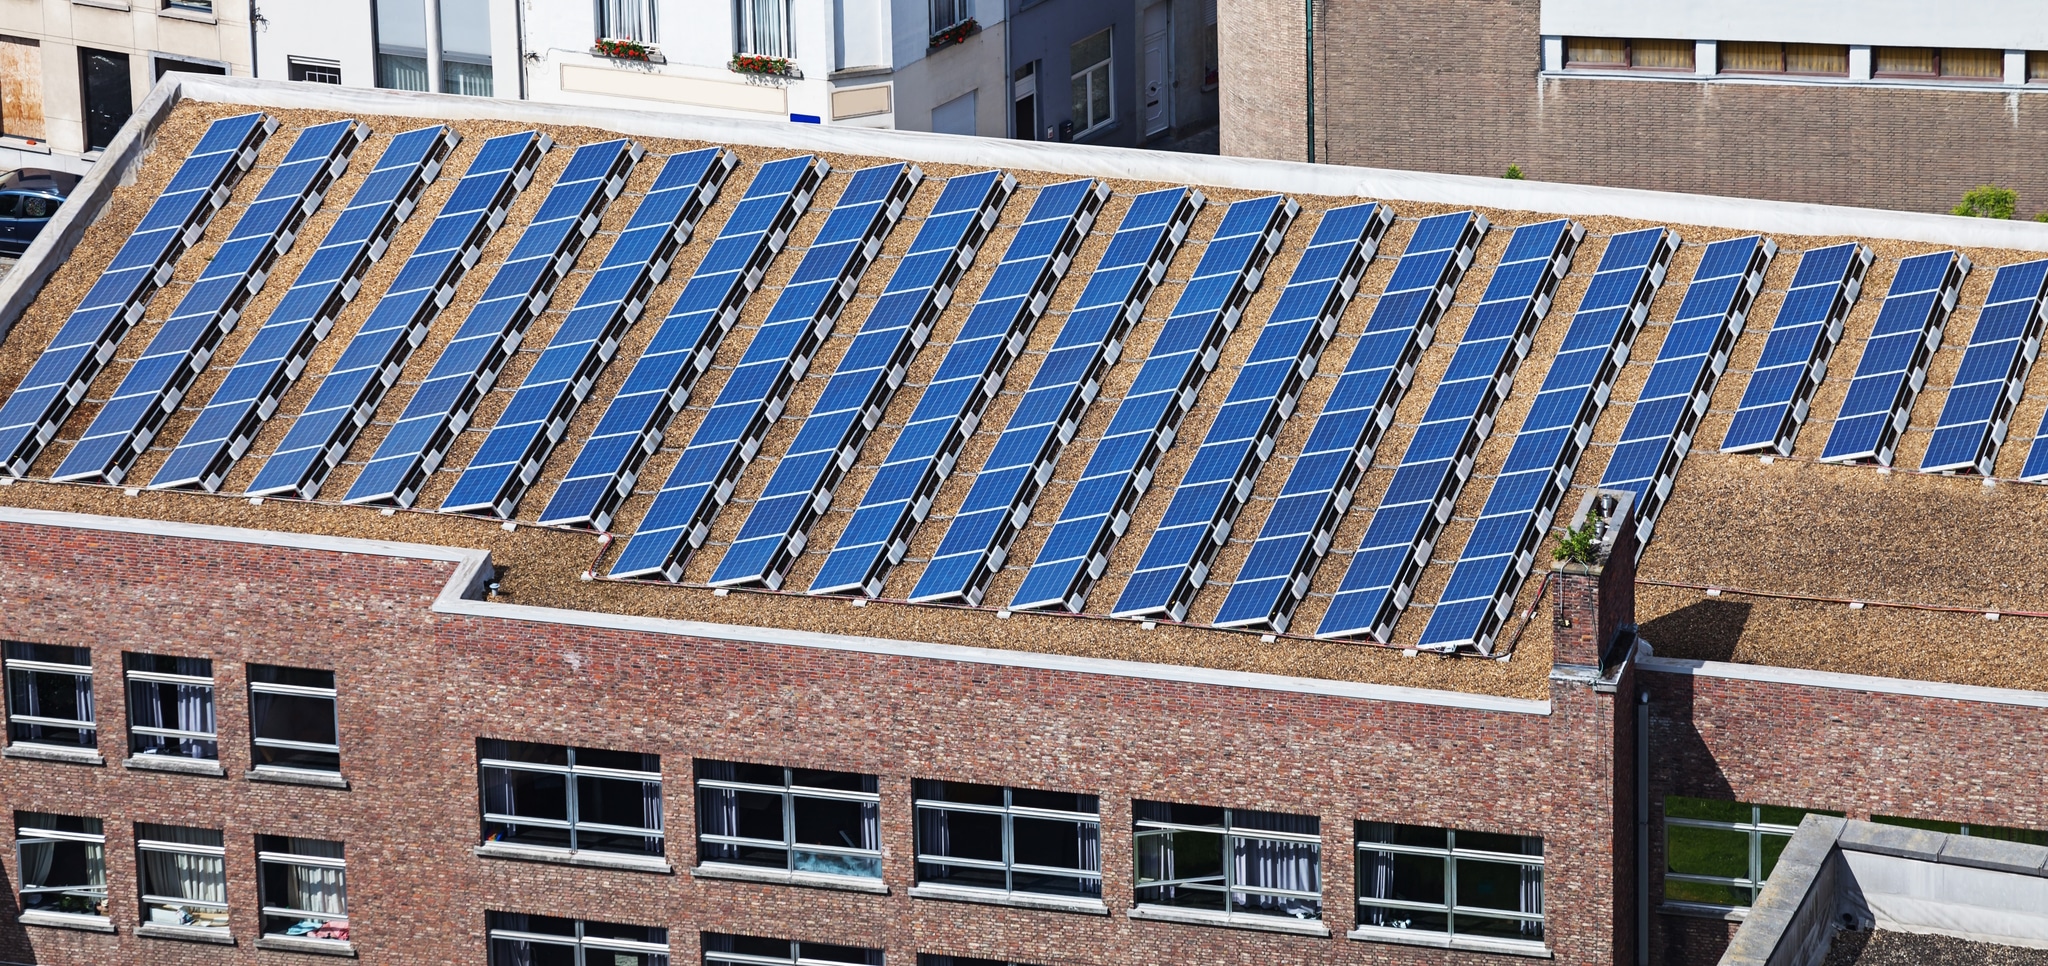 Solarmodule auf einem Verwaltungsgebäude oder Bürogebäude